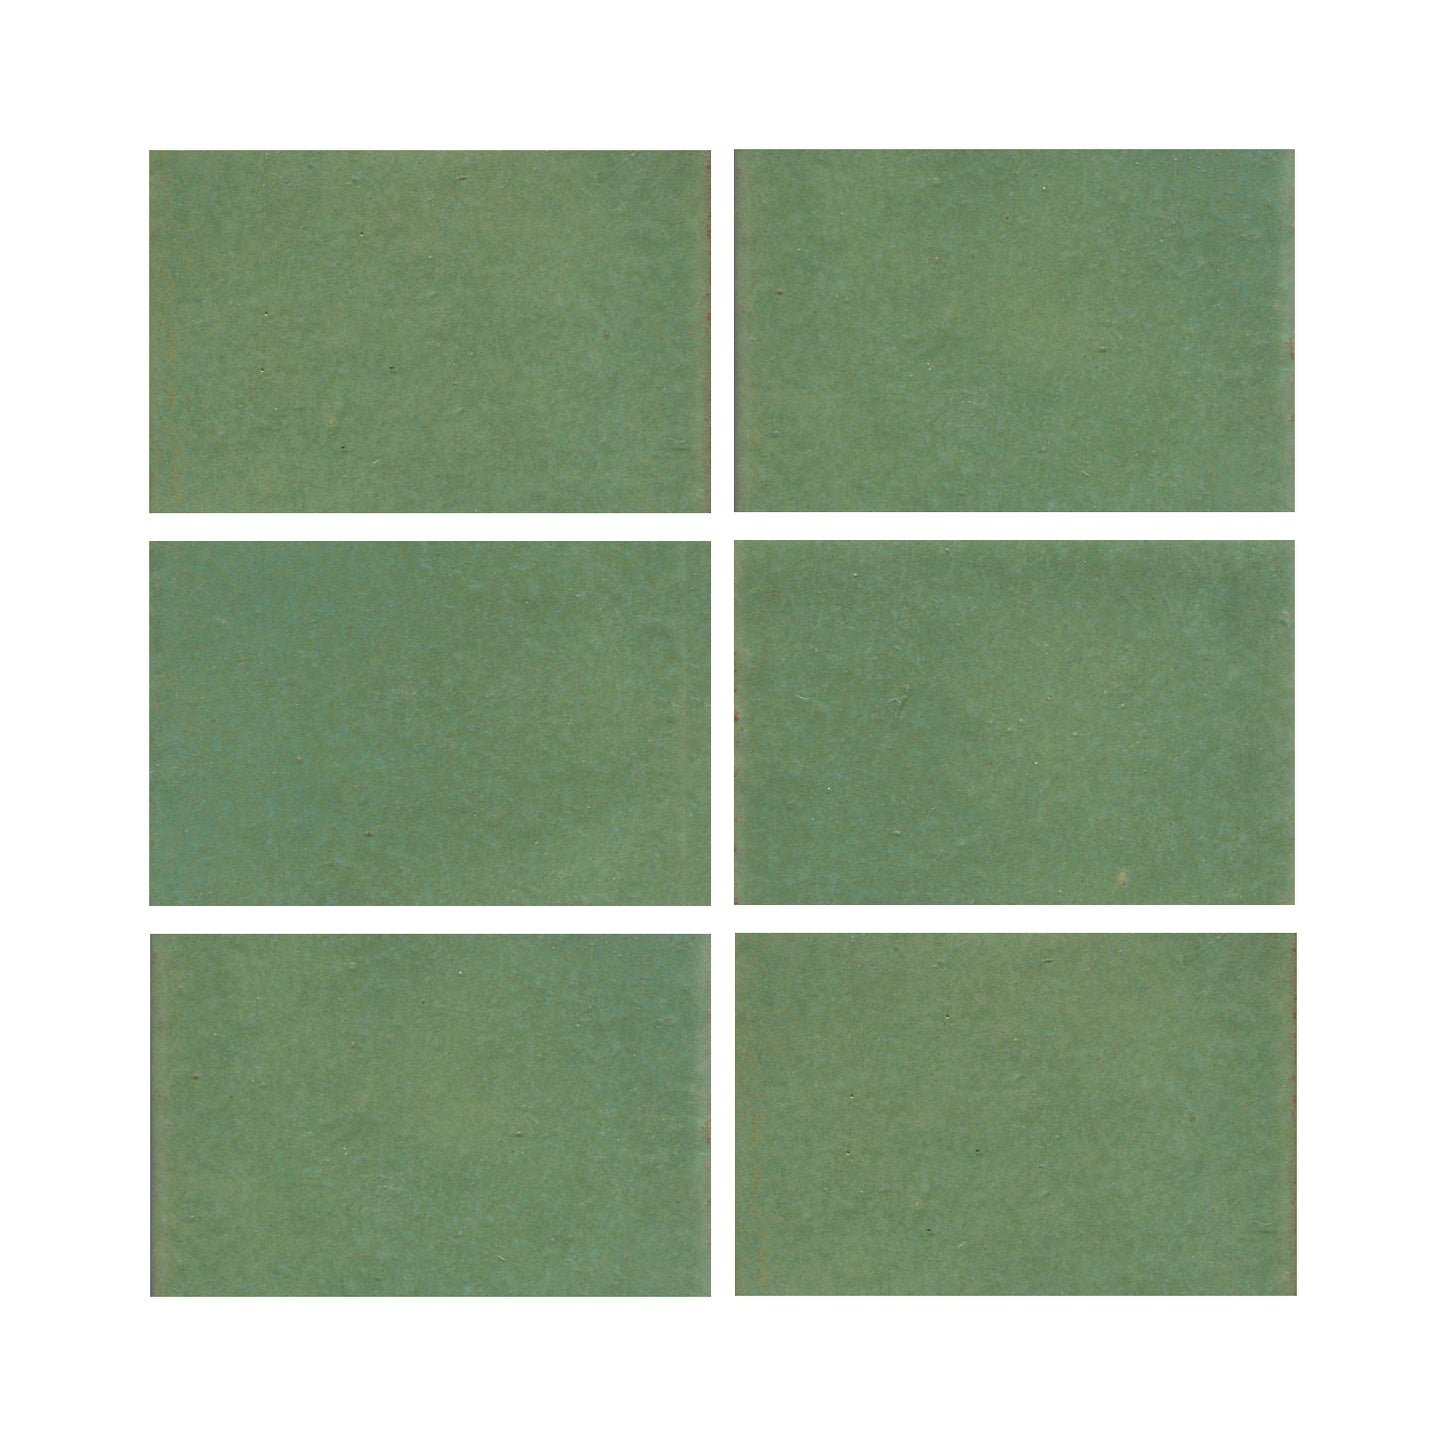 Wasabi green 3x4 field tile